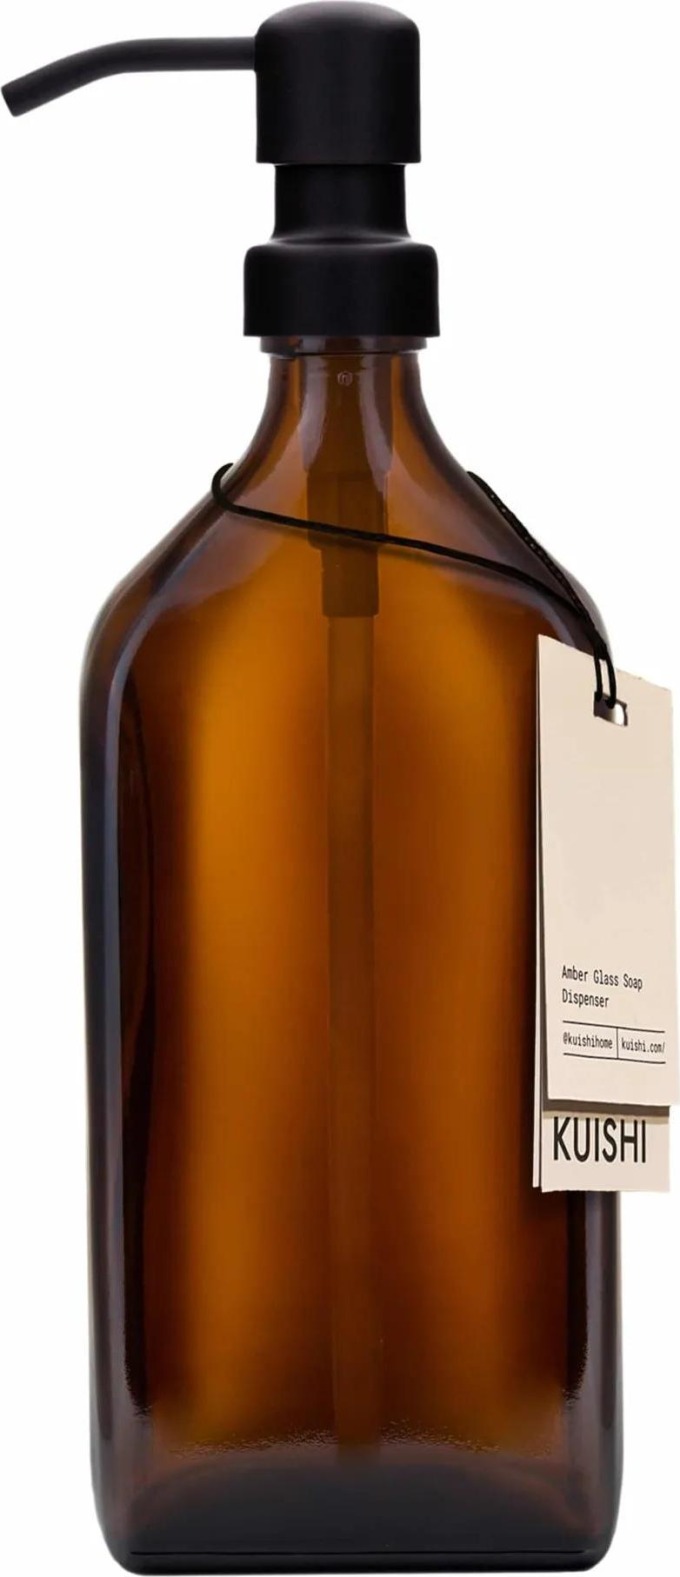 KUISHI Skleněný obdélníkový zásobník na mýdlo Amber 500 ml, hnědá barva, sklo